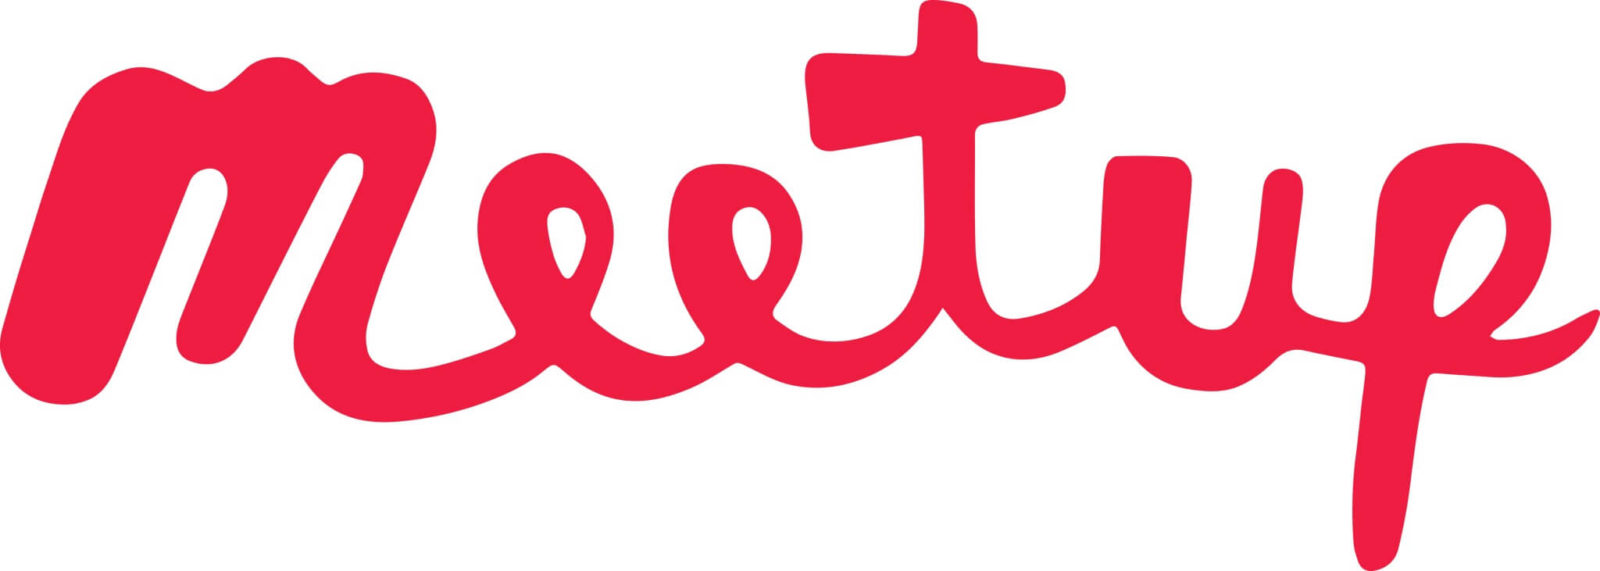 Meetup.com logo